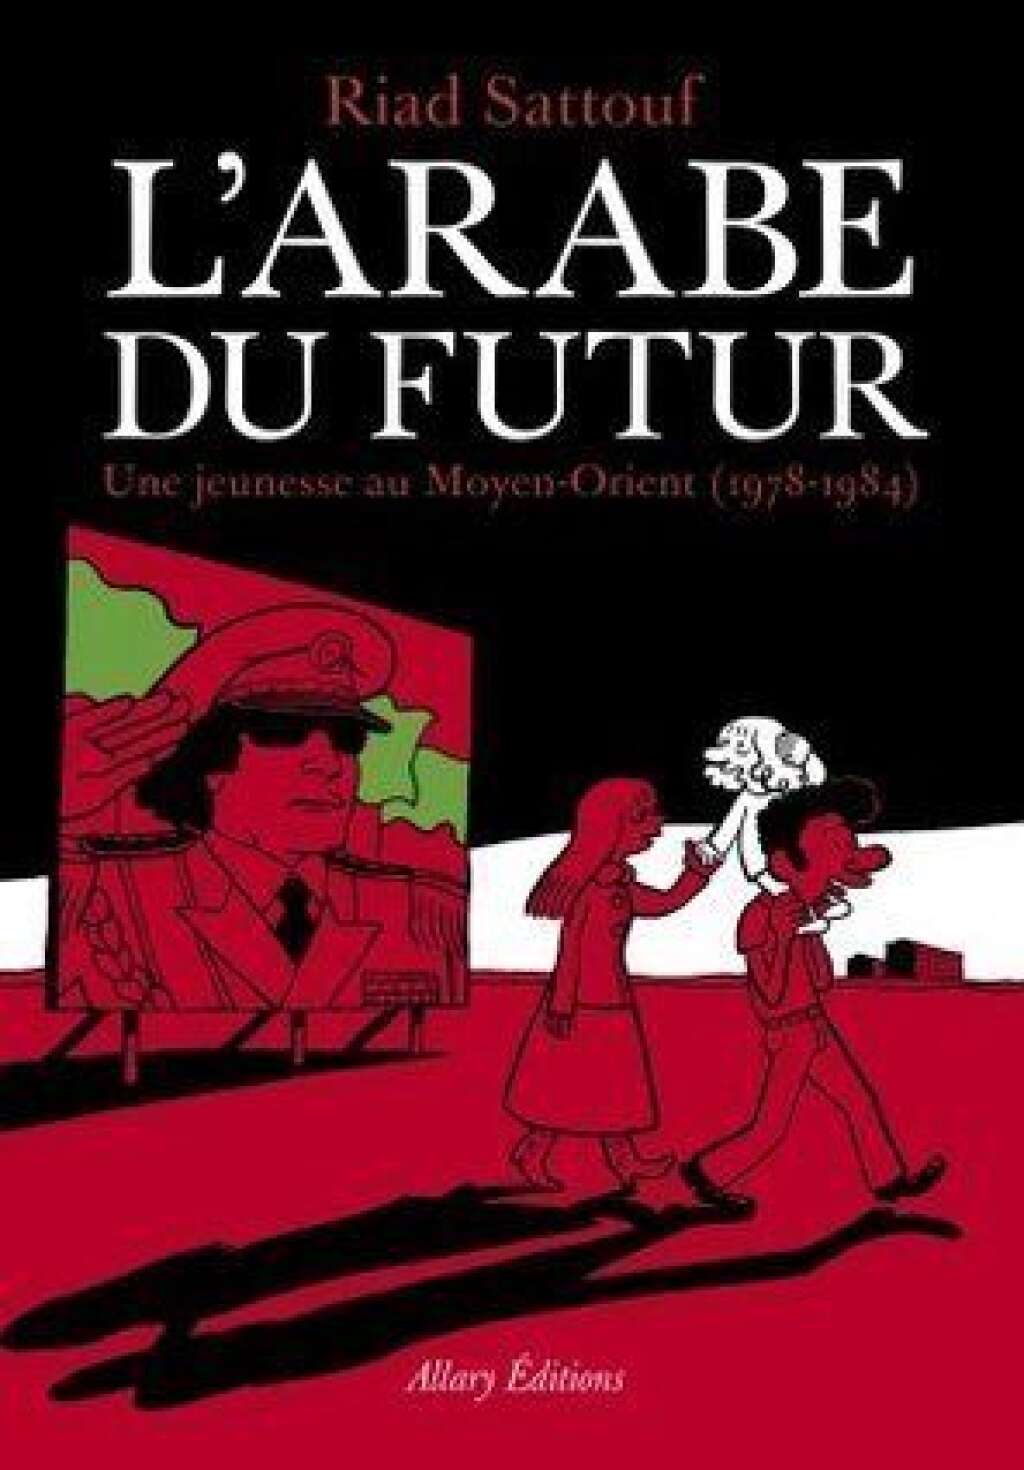 L’Arabe du futur : une jeunesse au Moyen-Orient (1978-1984) / 150 000 exemplaires - Riad Sattouf, Éd: Allary éditions